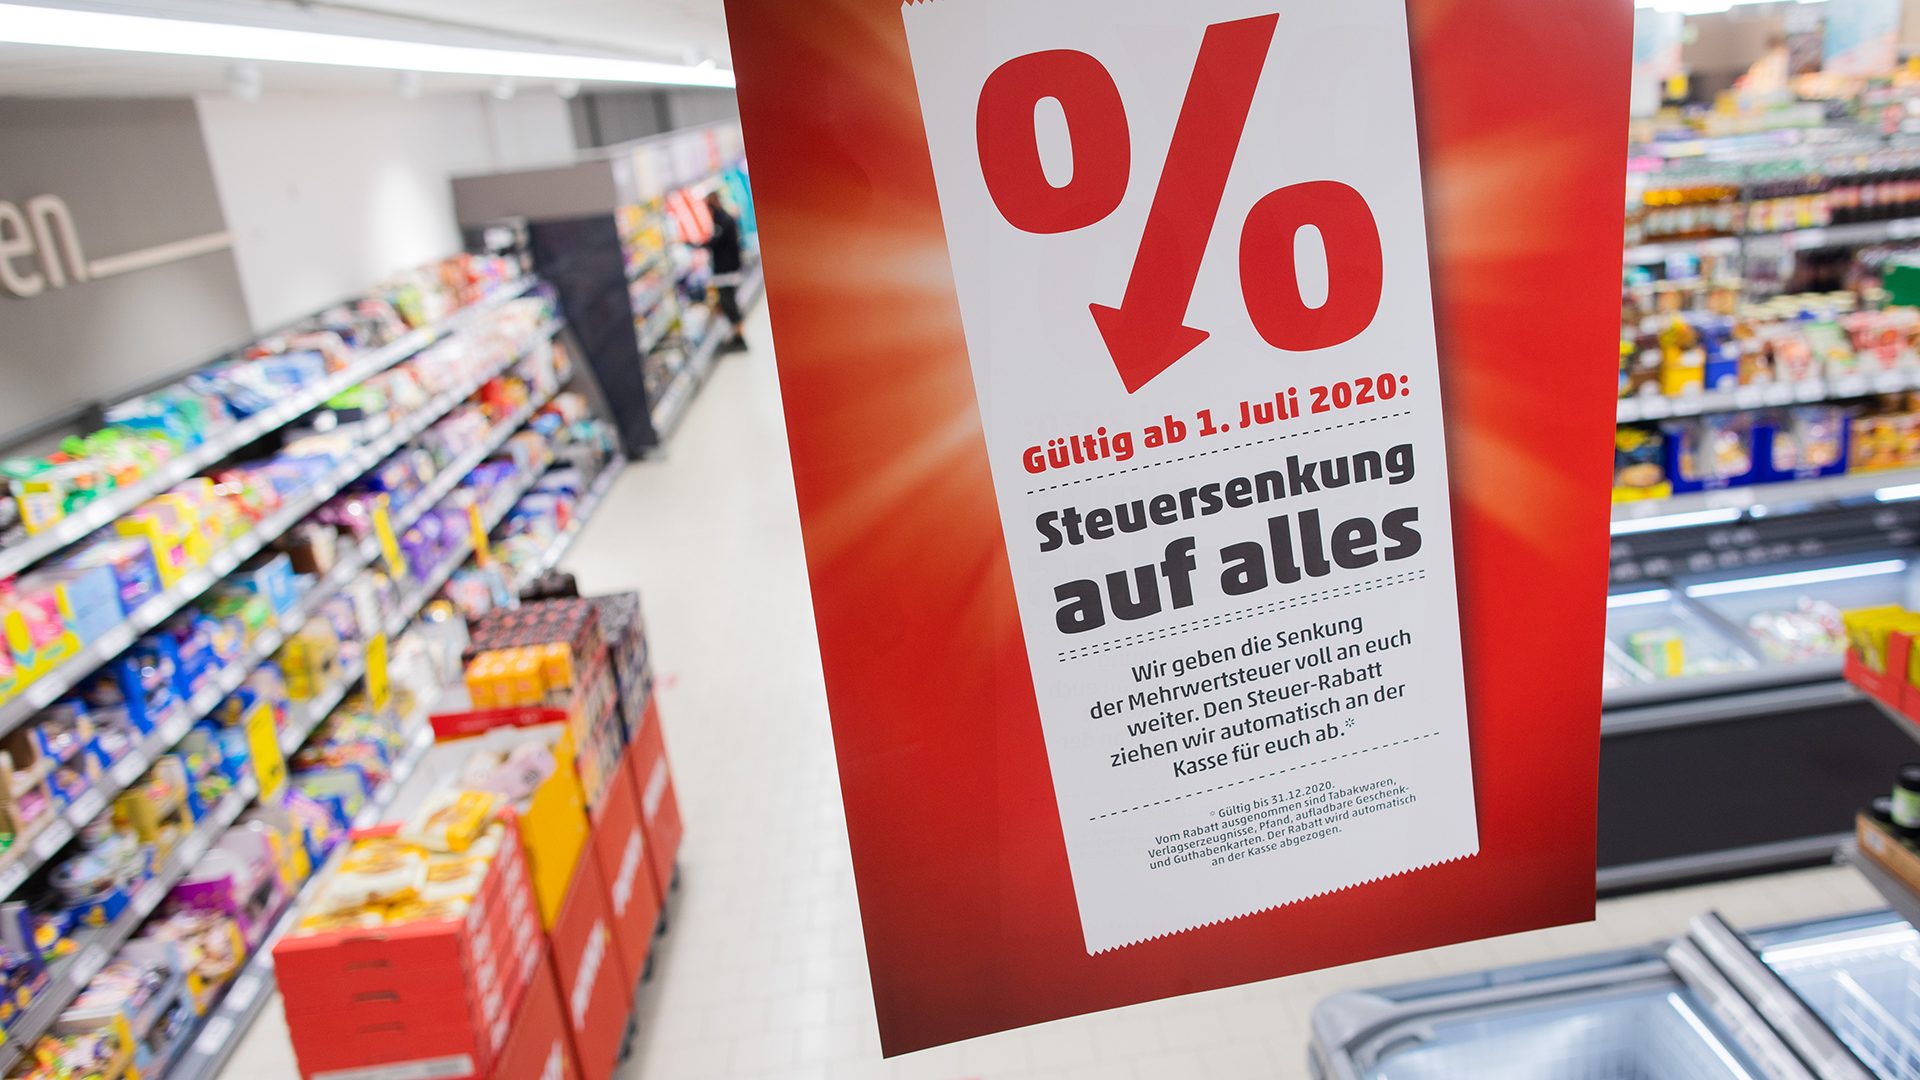  Ein Plakat mit der Aufschrift "Steuersenkung für alle" hängt in einem Supermarkt.